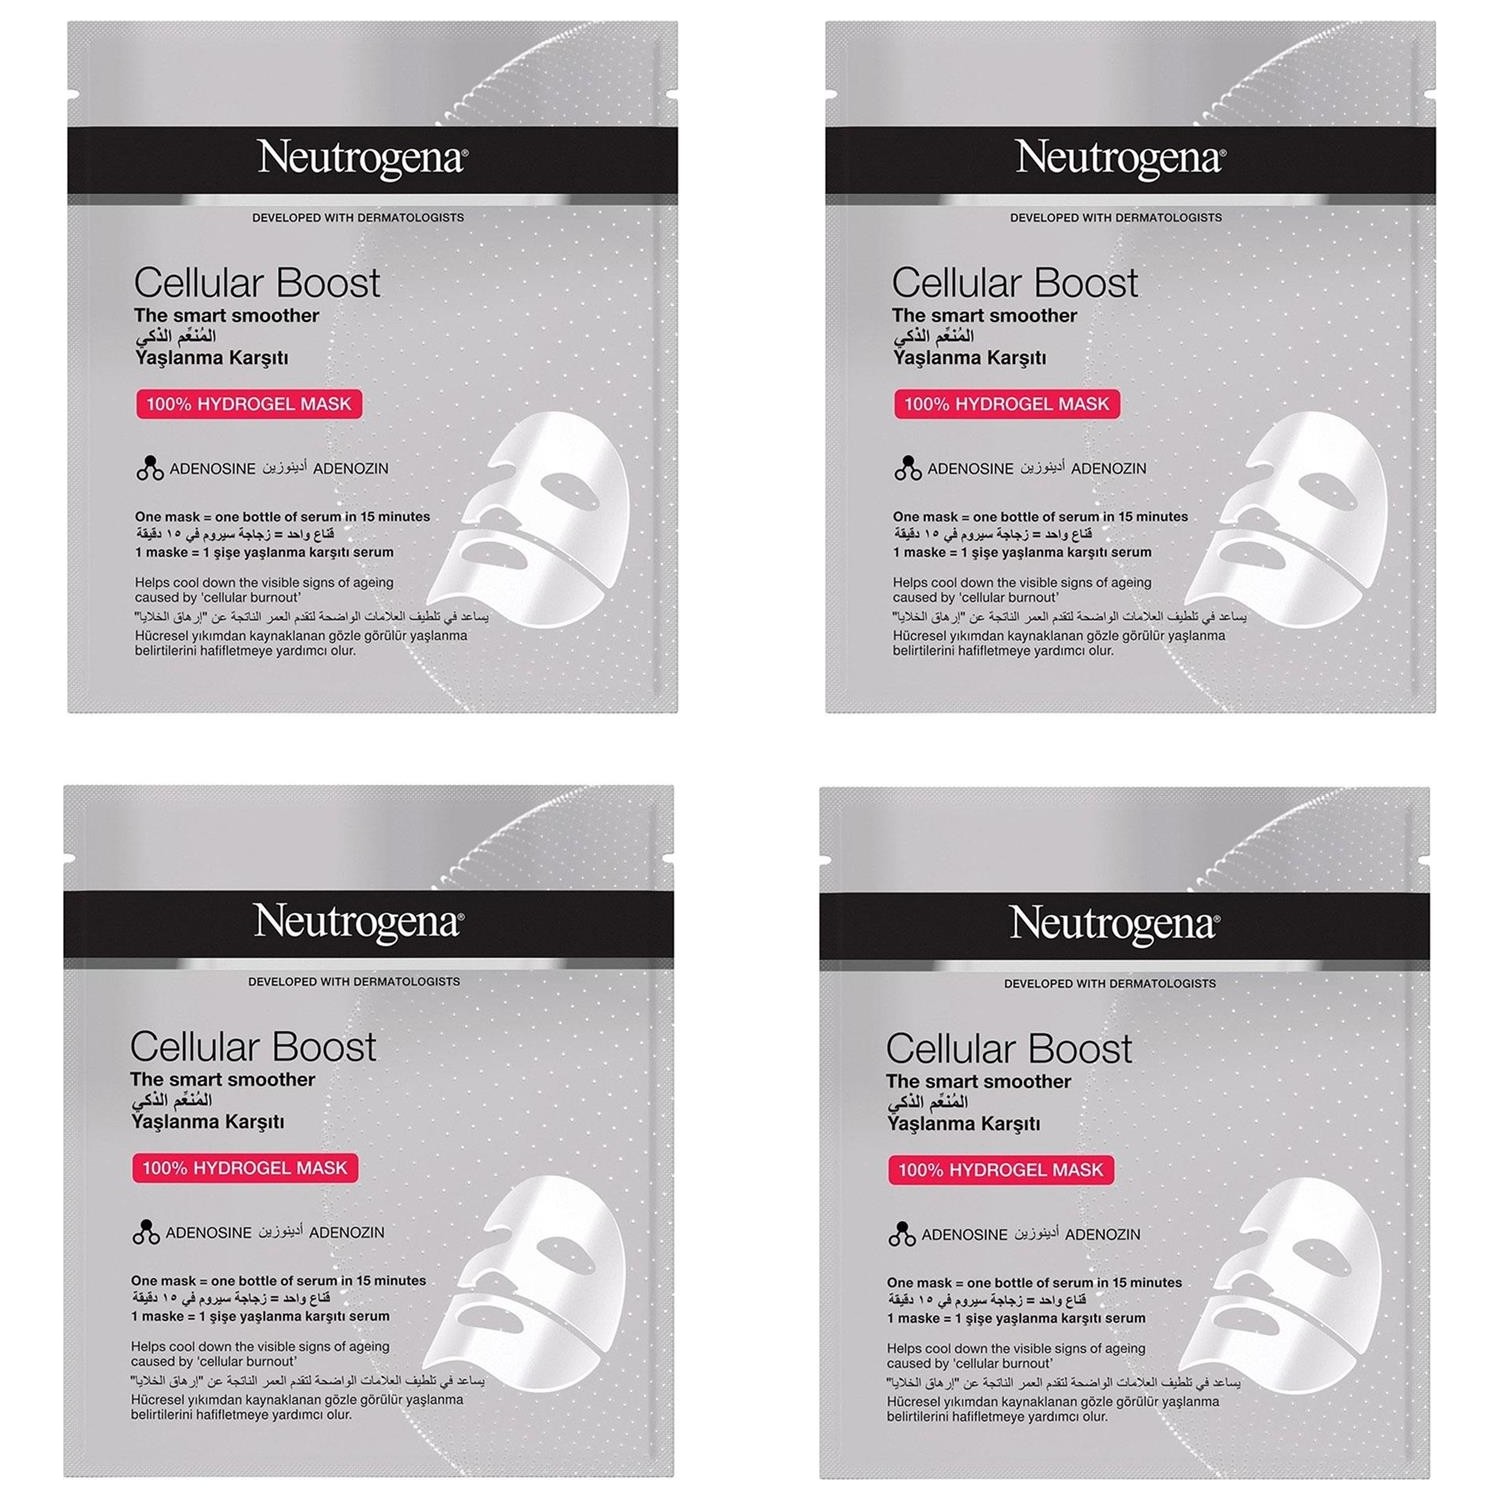 Маска Neutrogena Cellular Boost омолаживающая гидрогелевая, 4 упаковки по 30 мл neutrogena facial creams and moisturizers hydrogel mask cellular boost adenosine 30 ml